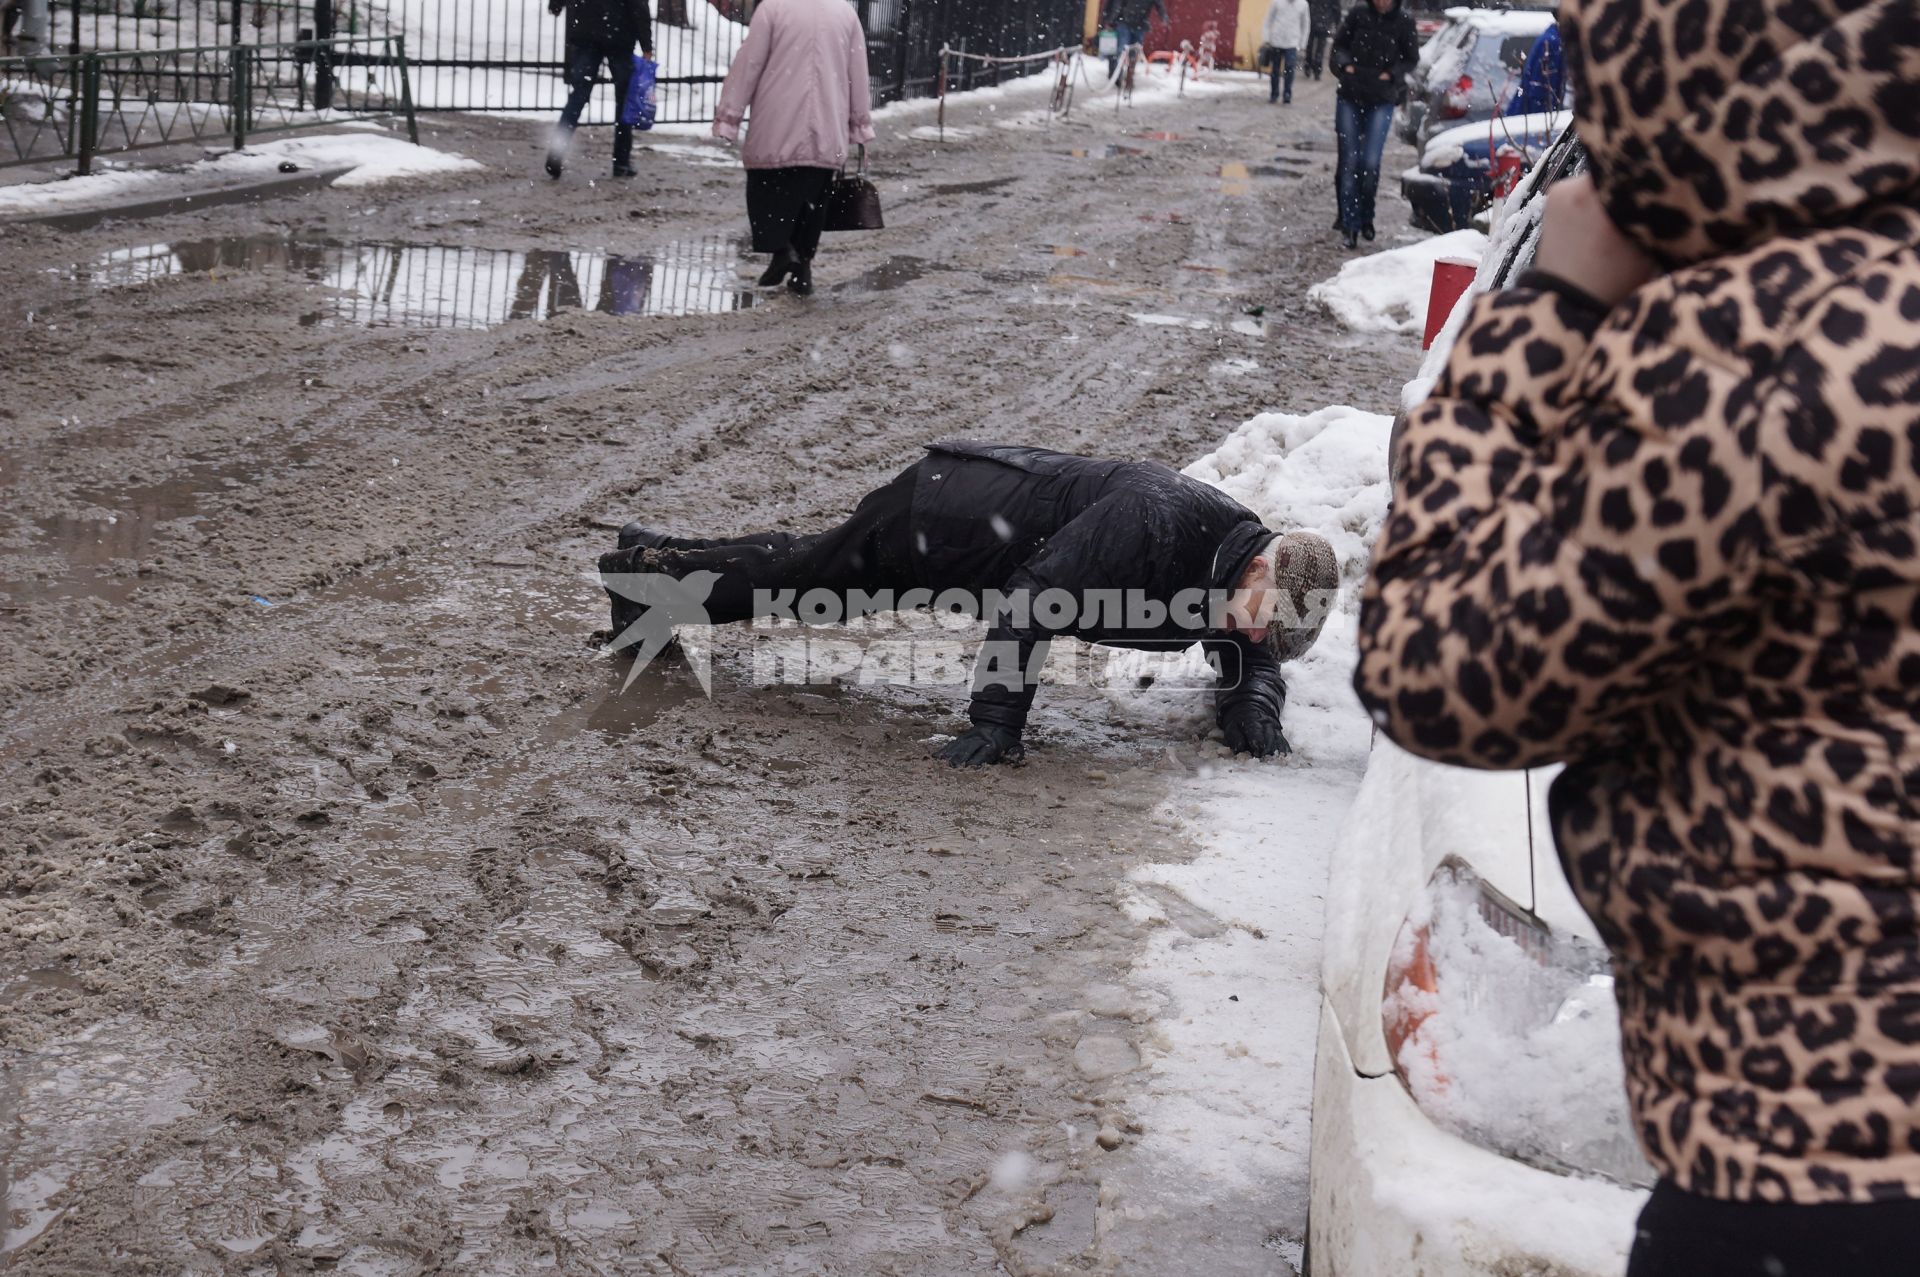 Екатеринбург. Мужчина упал в грязь подскользнувшись на тротуаре